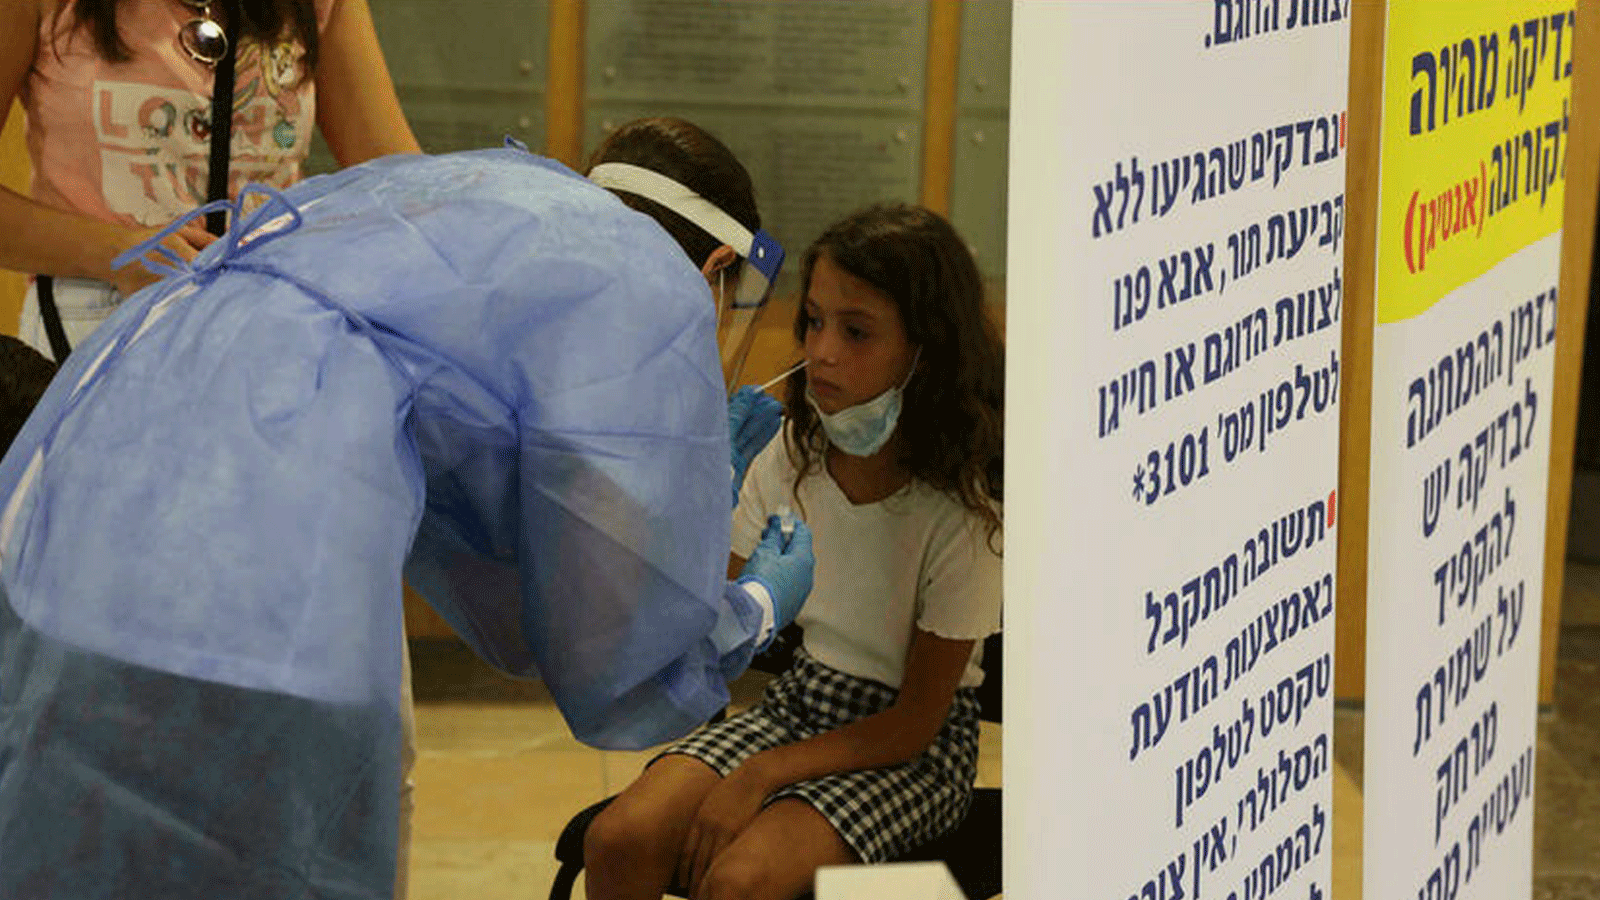 إسرائيل تفرض إجراء اختبار كوفيد على الأطفال الذين تبلغ أعمارهم 12 عامًا أو أكثر من أجل دخول العديد من الأماكن العامة. وسيتم تمديد هذا الشرط ليشمل من هم في سن الثالثة وما فوق